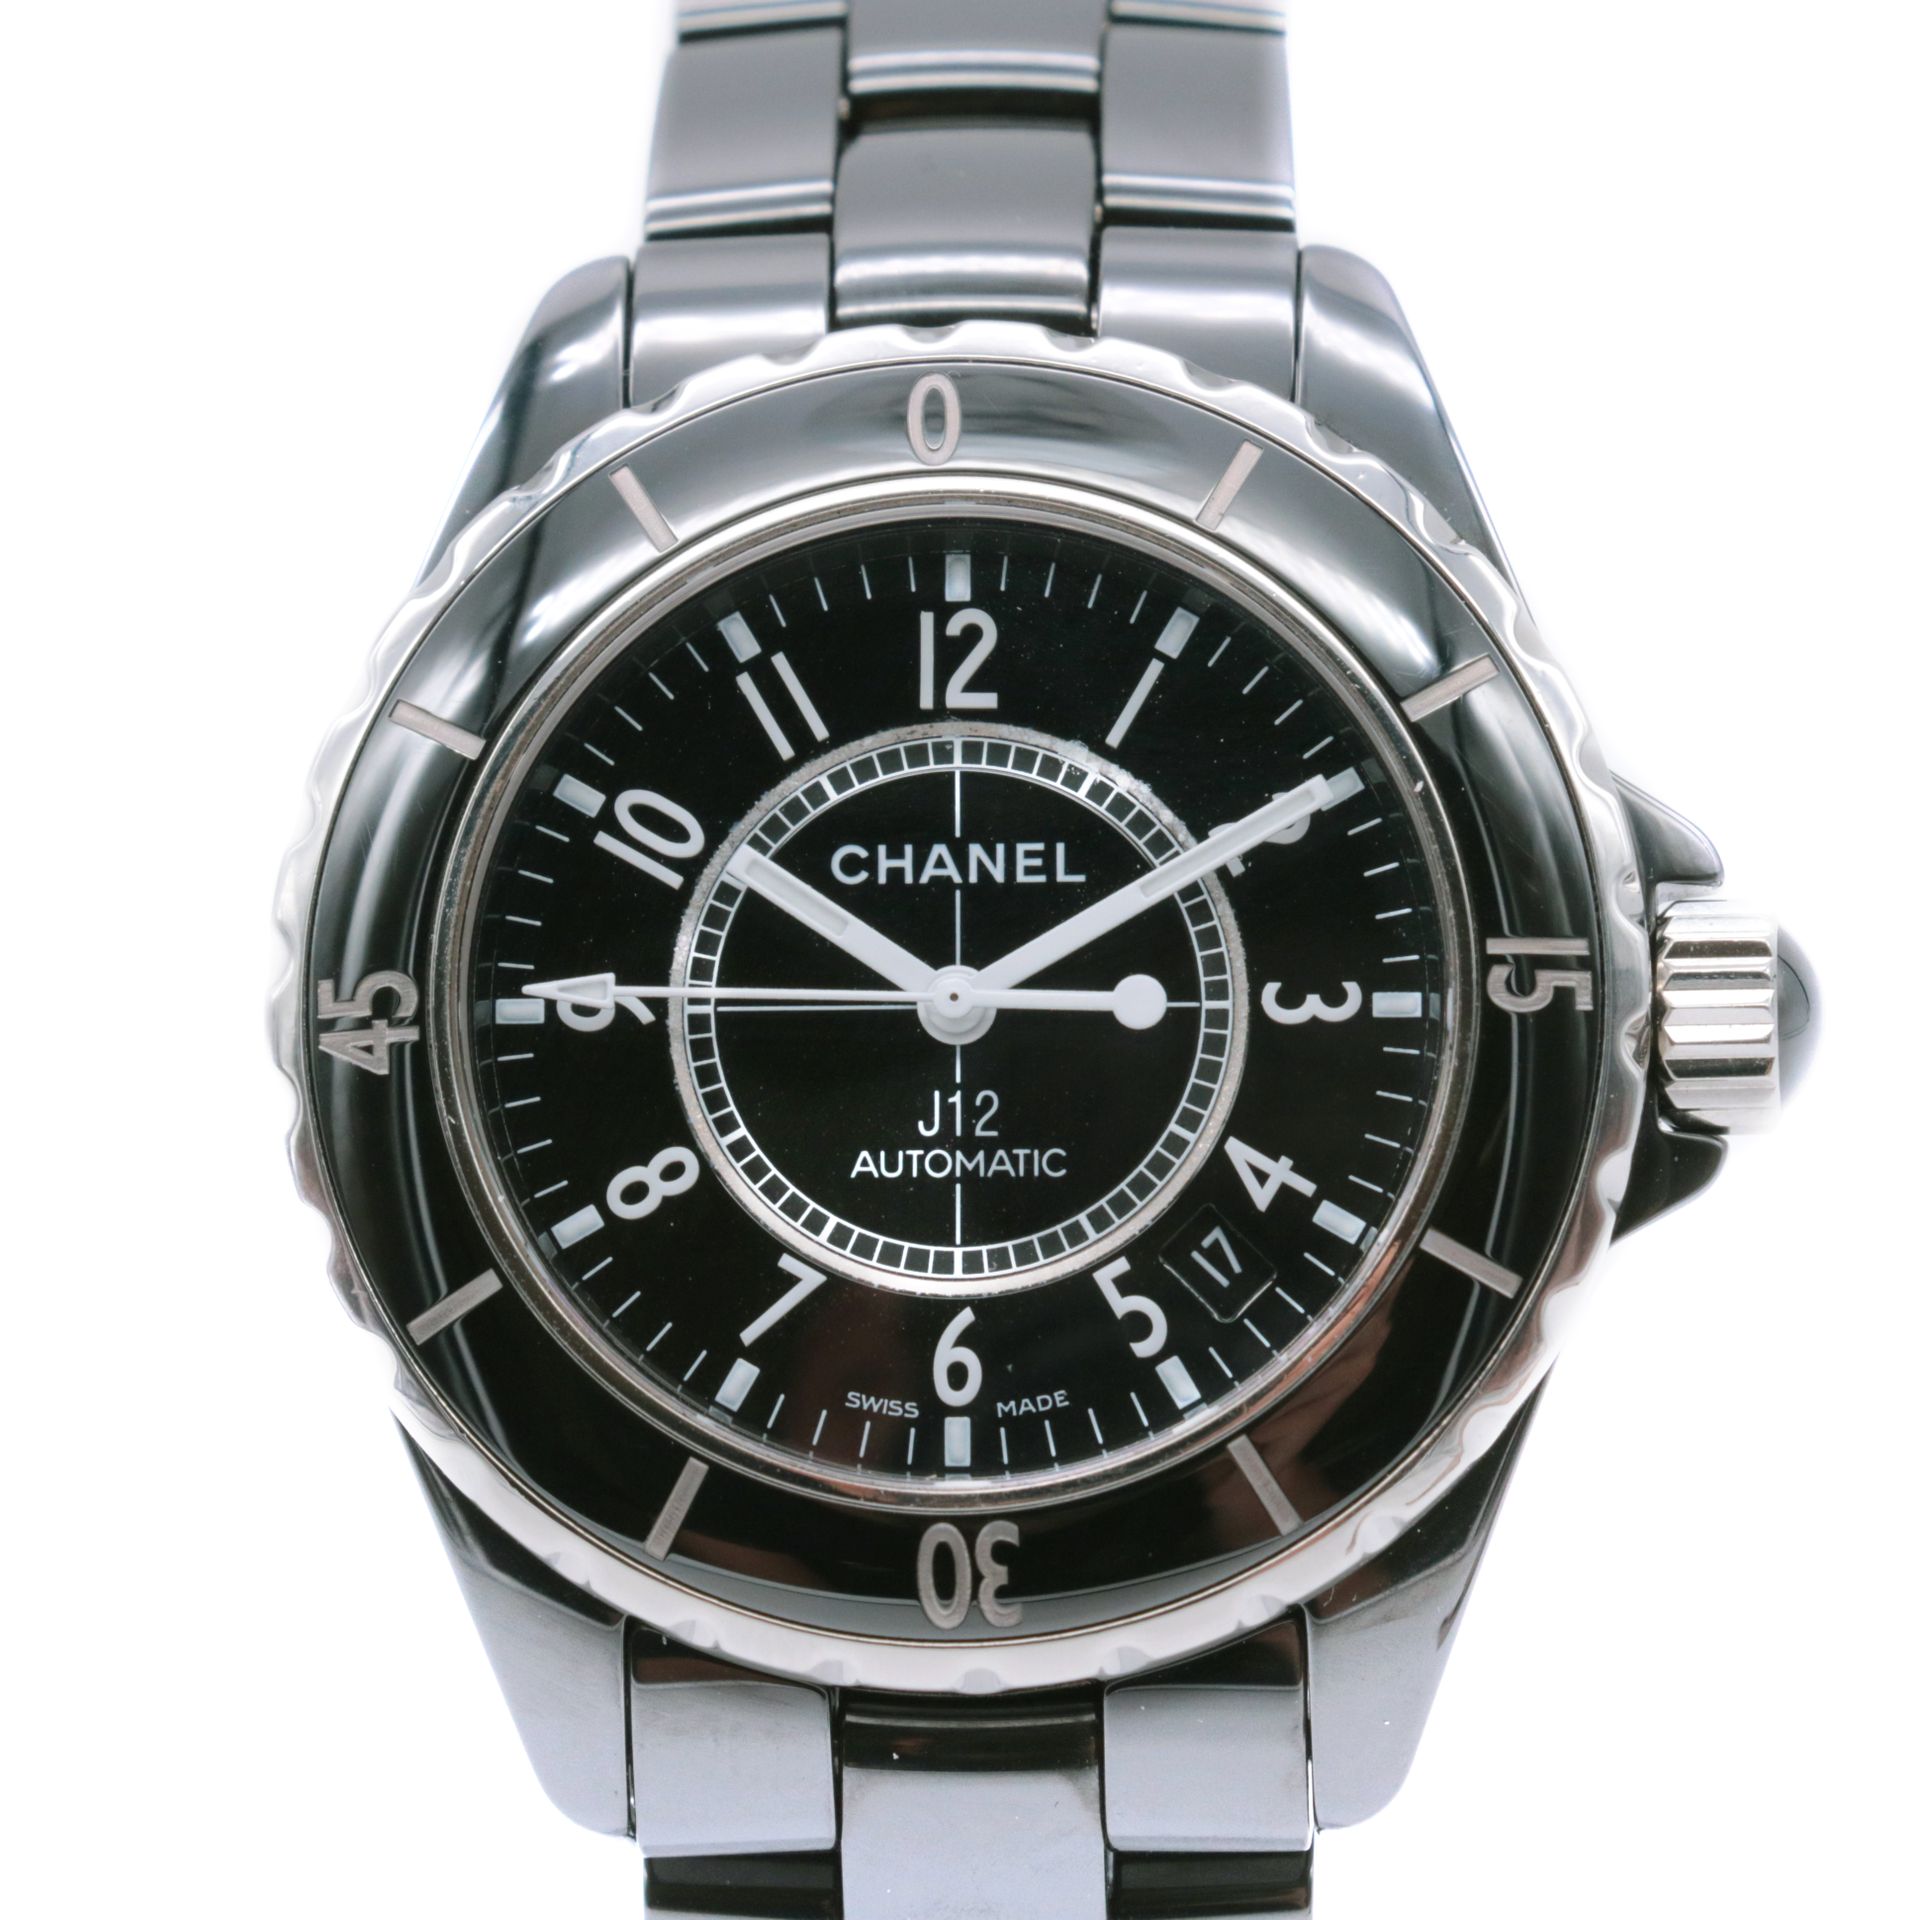 Montre Chanel, J12 Ceramic La cassa in ceramica e titanio, firmata

Il quadrante&hellip;